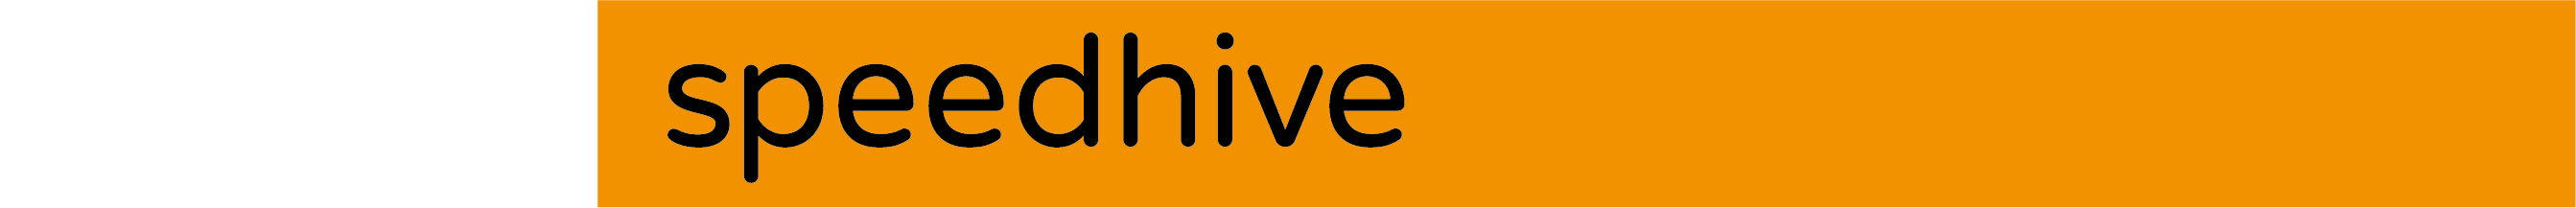 Speedhive-Logo-DIAP